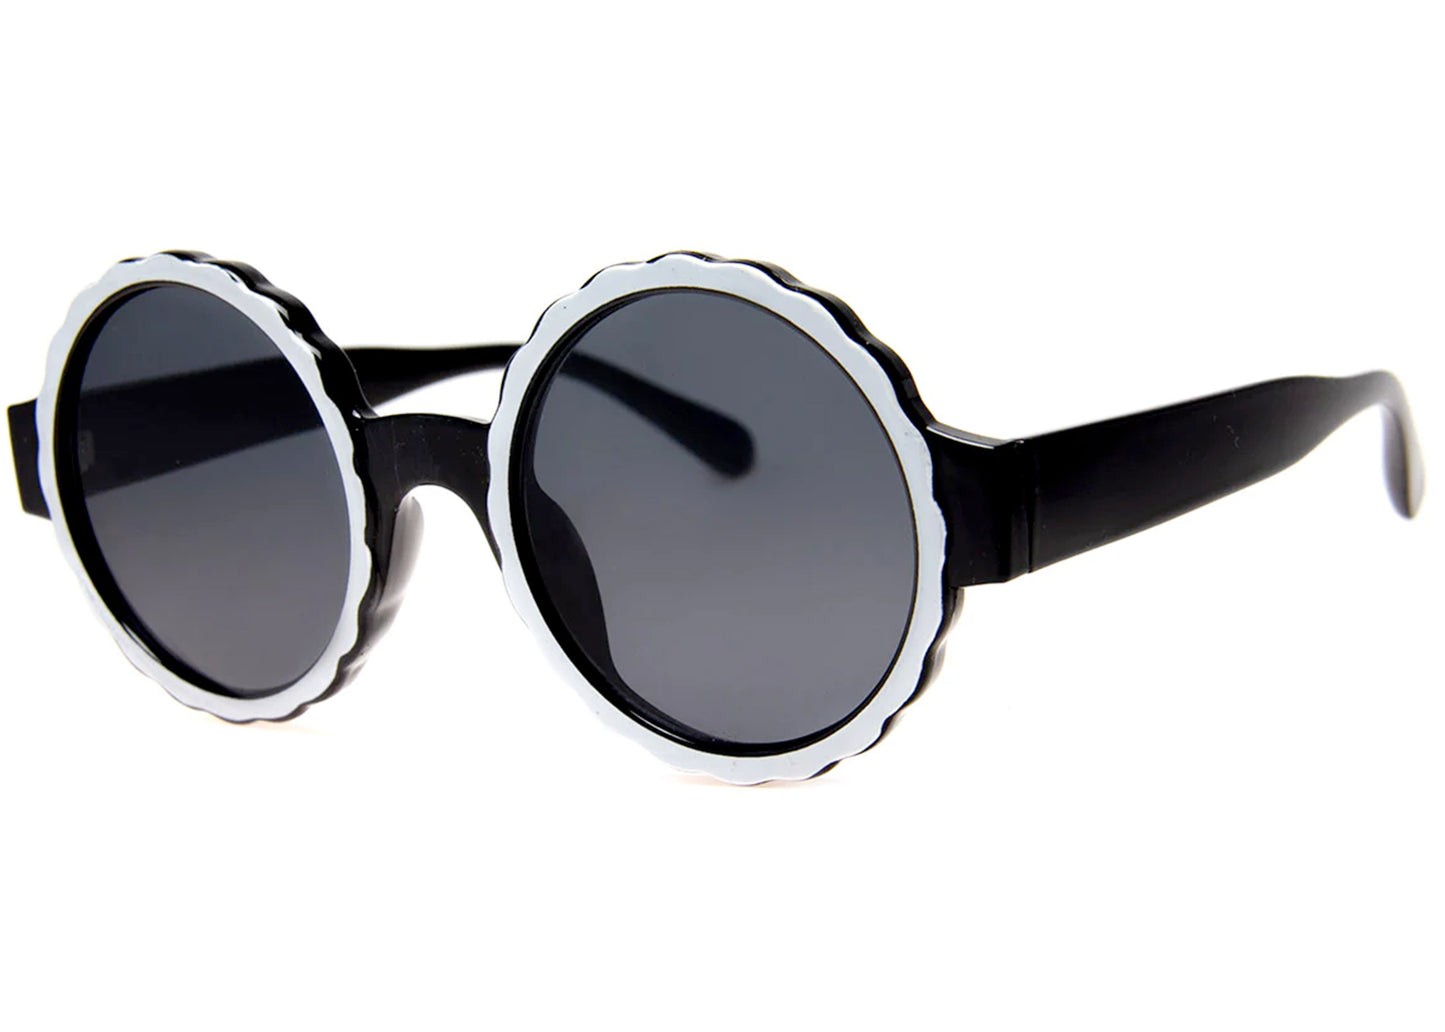 Omelette Sunglasses in Black/White